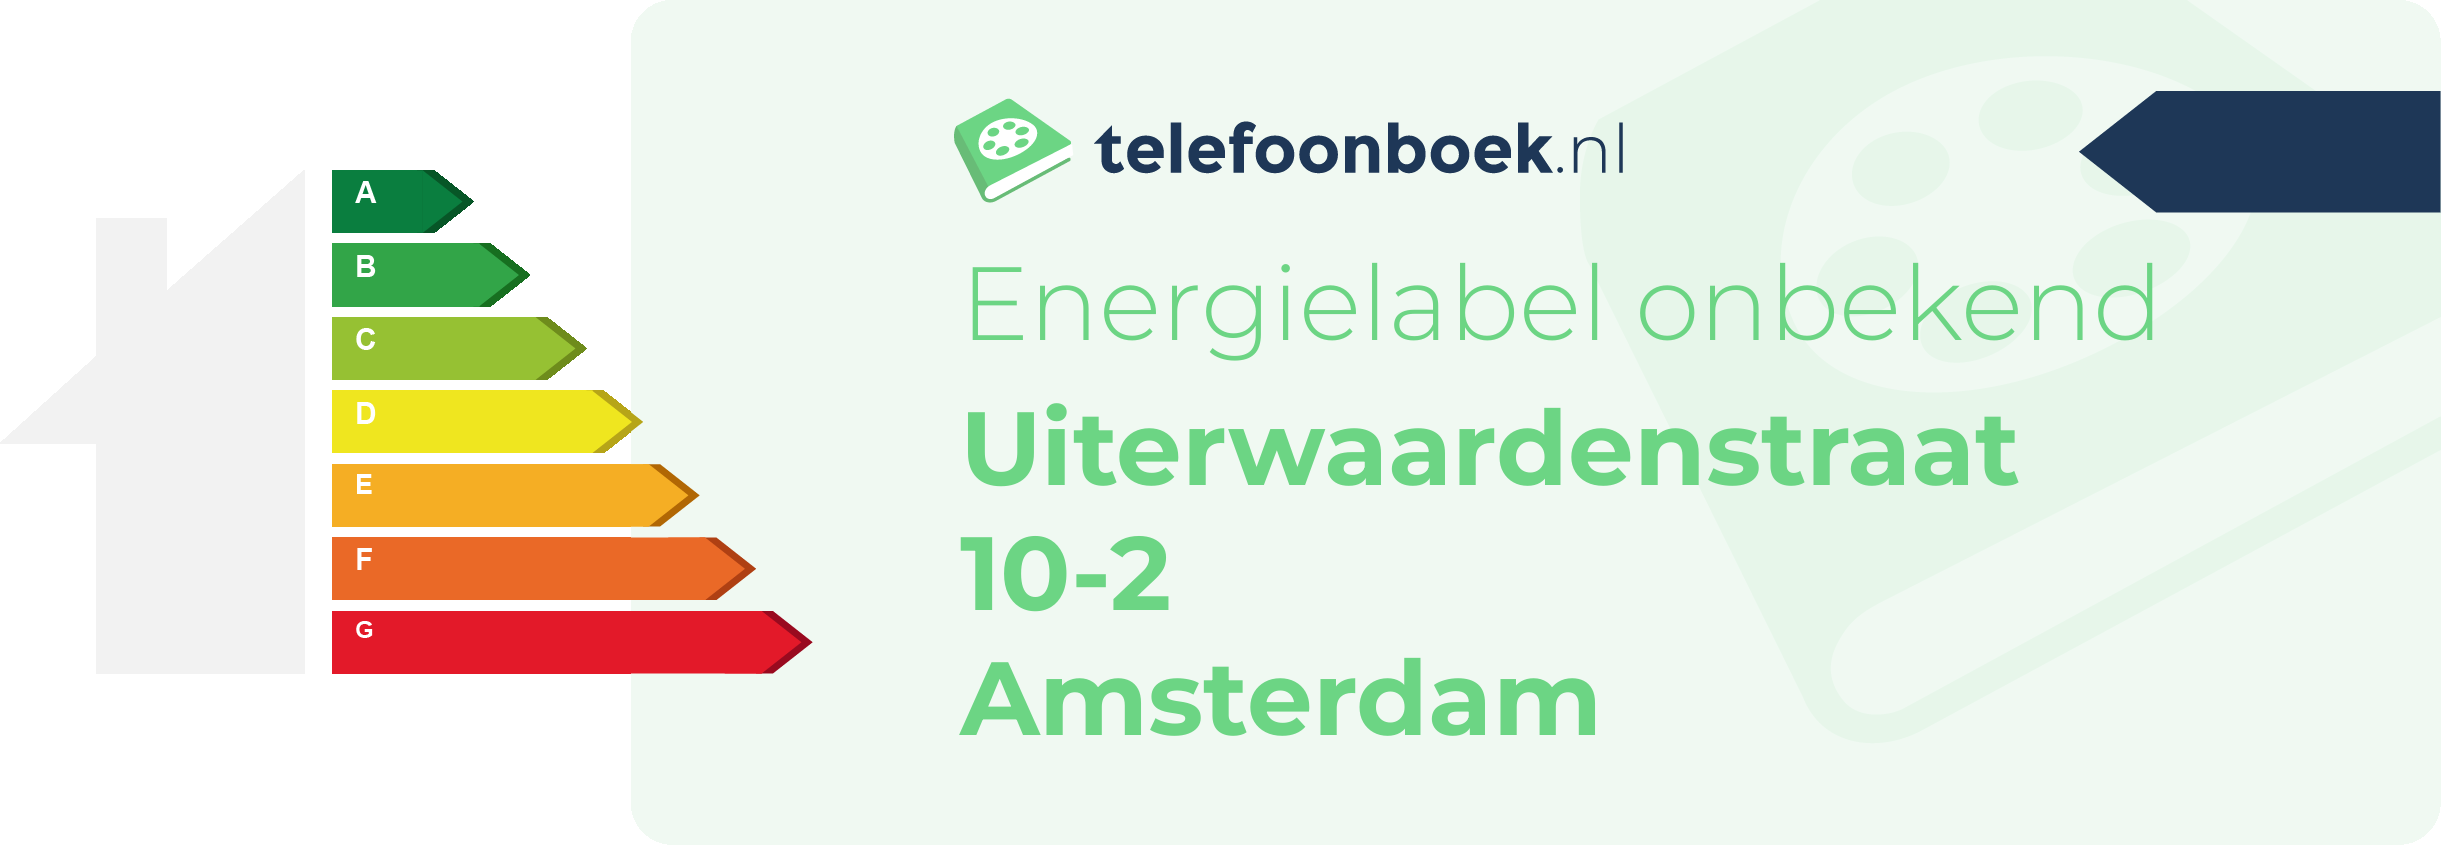 Energielabel Uiterwaardenstraat 10-2 Amsterdam